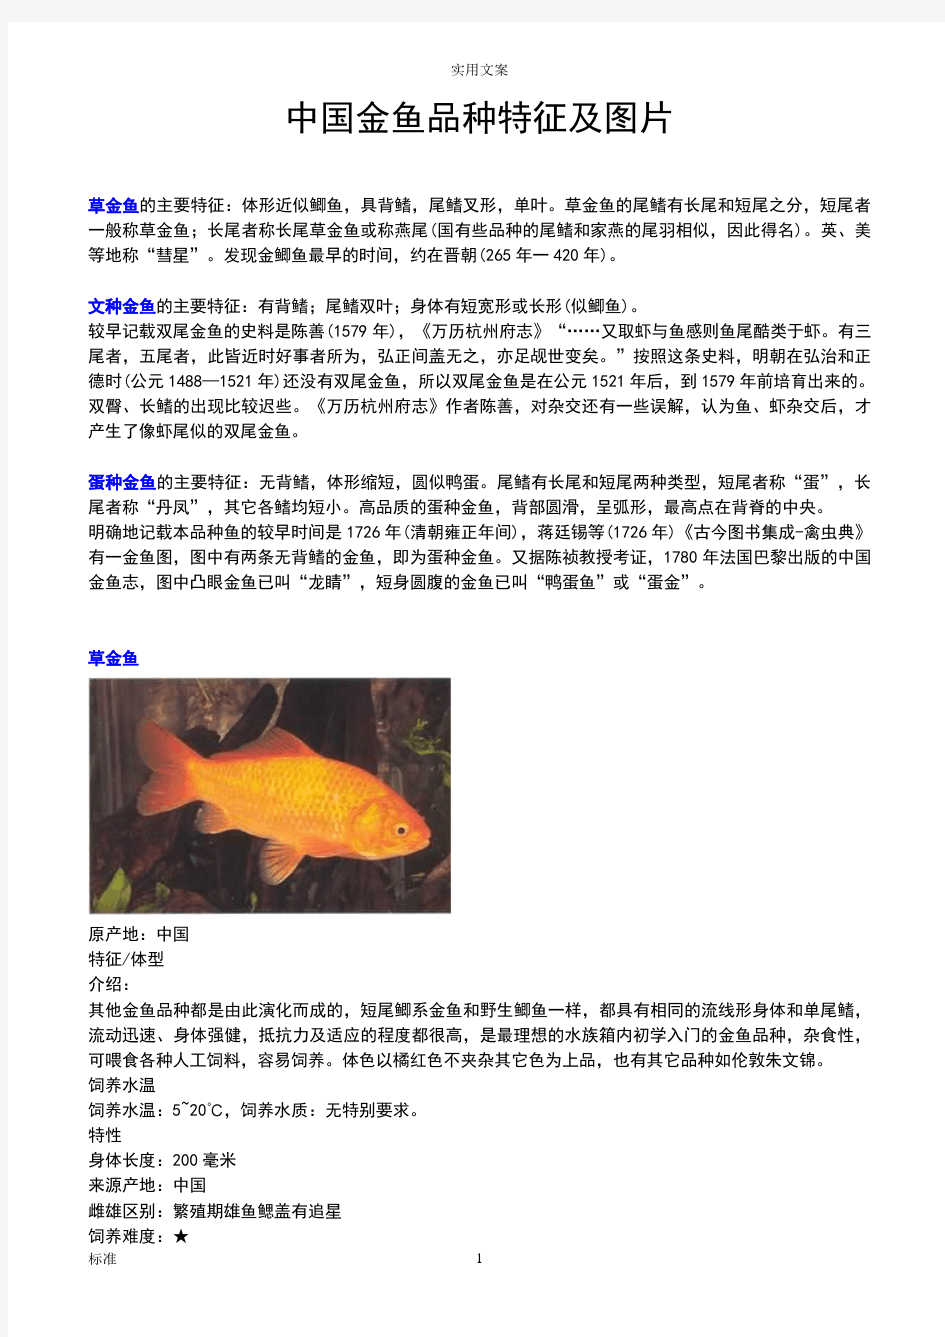 (全)金鱼种类及图片.pdf